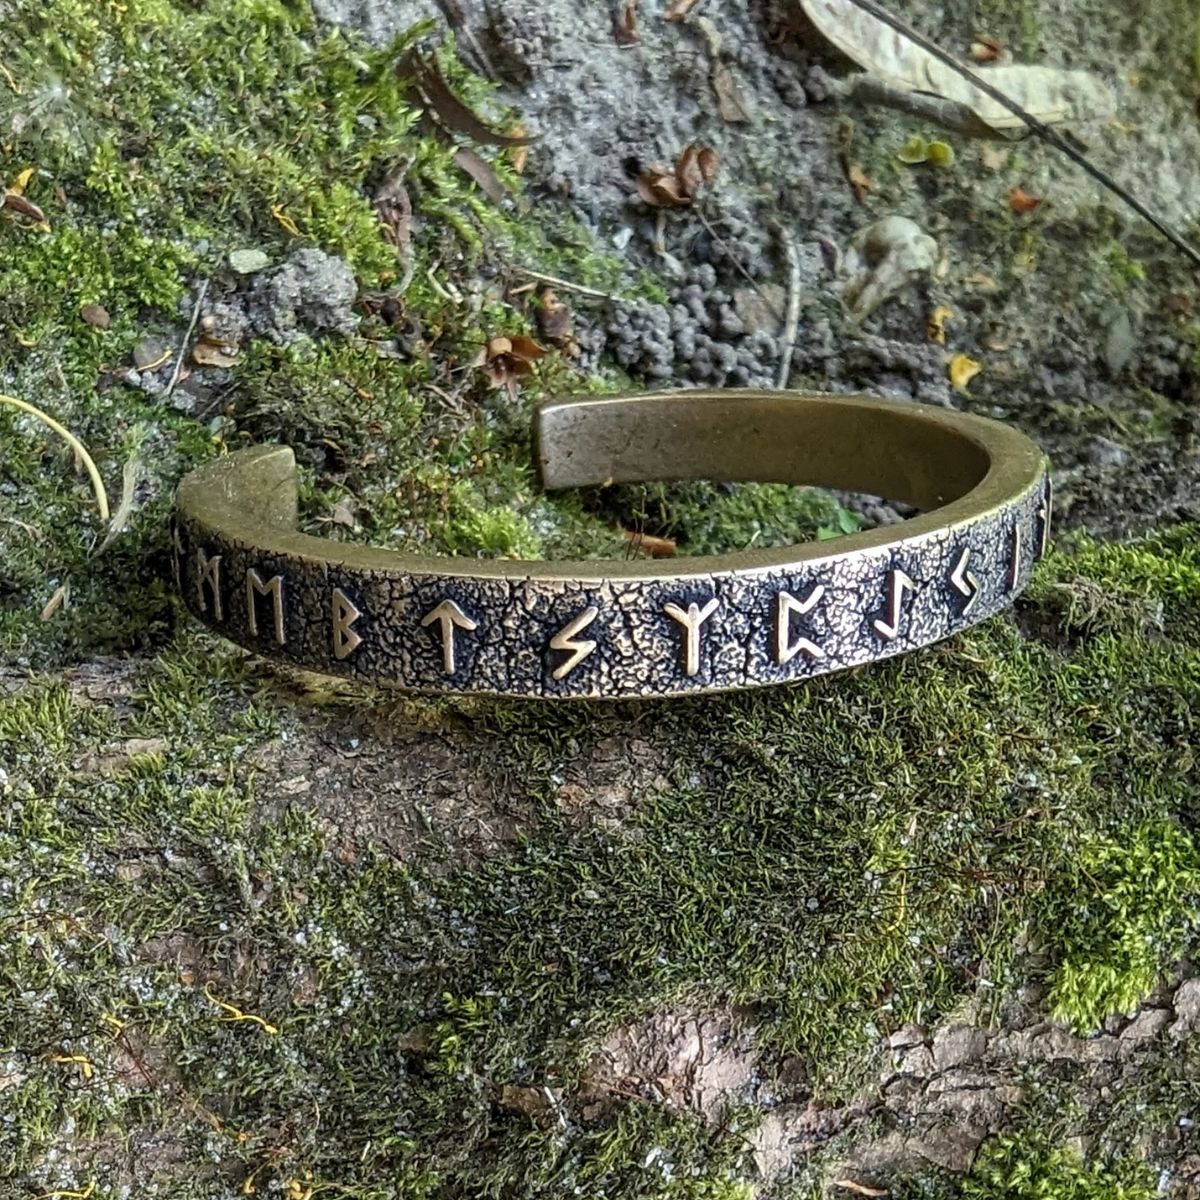  Bracelet Runes Viking